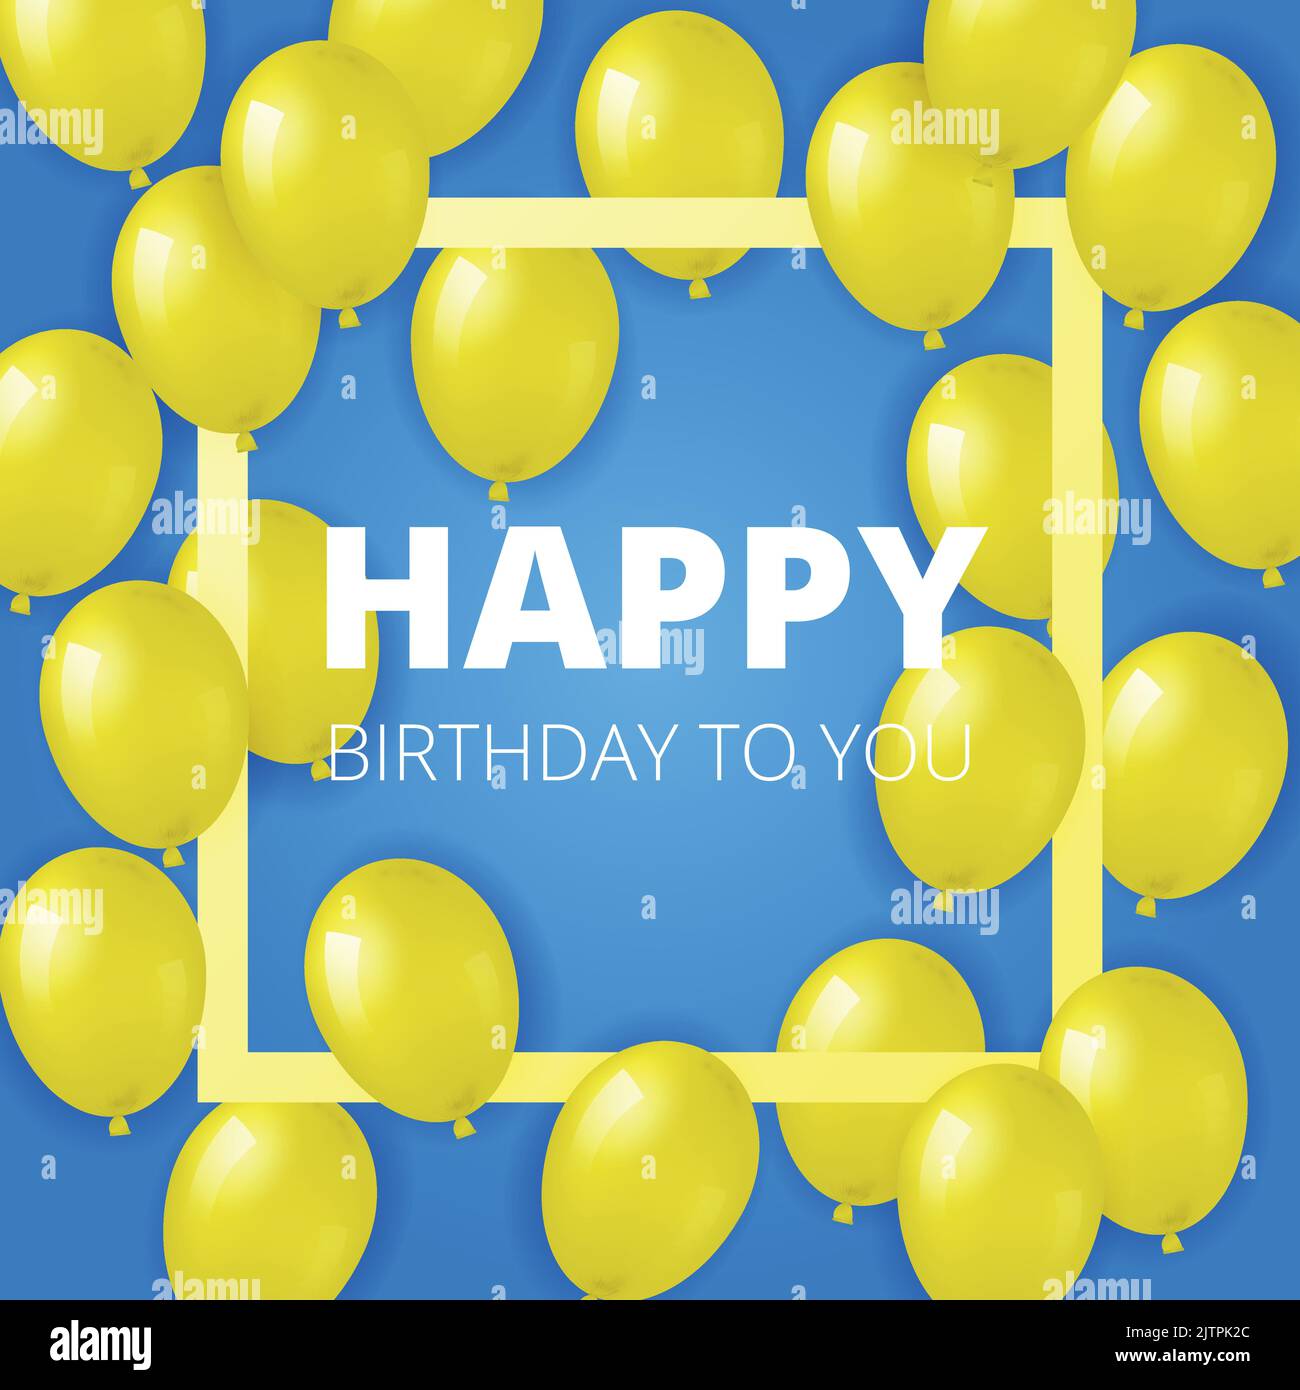 Arrière-plan bleu avec ballons d'hélium jaune réalistes, texte et cadre carré. Peut être utilisé pour les affiches, les invitations, les fliyers, le papier peint, les bannières, poste Illustration de Vecteur